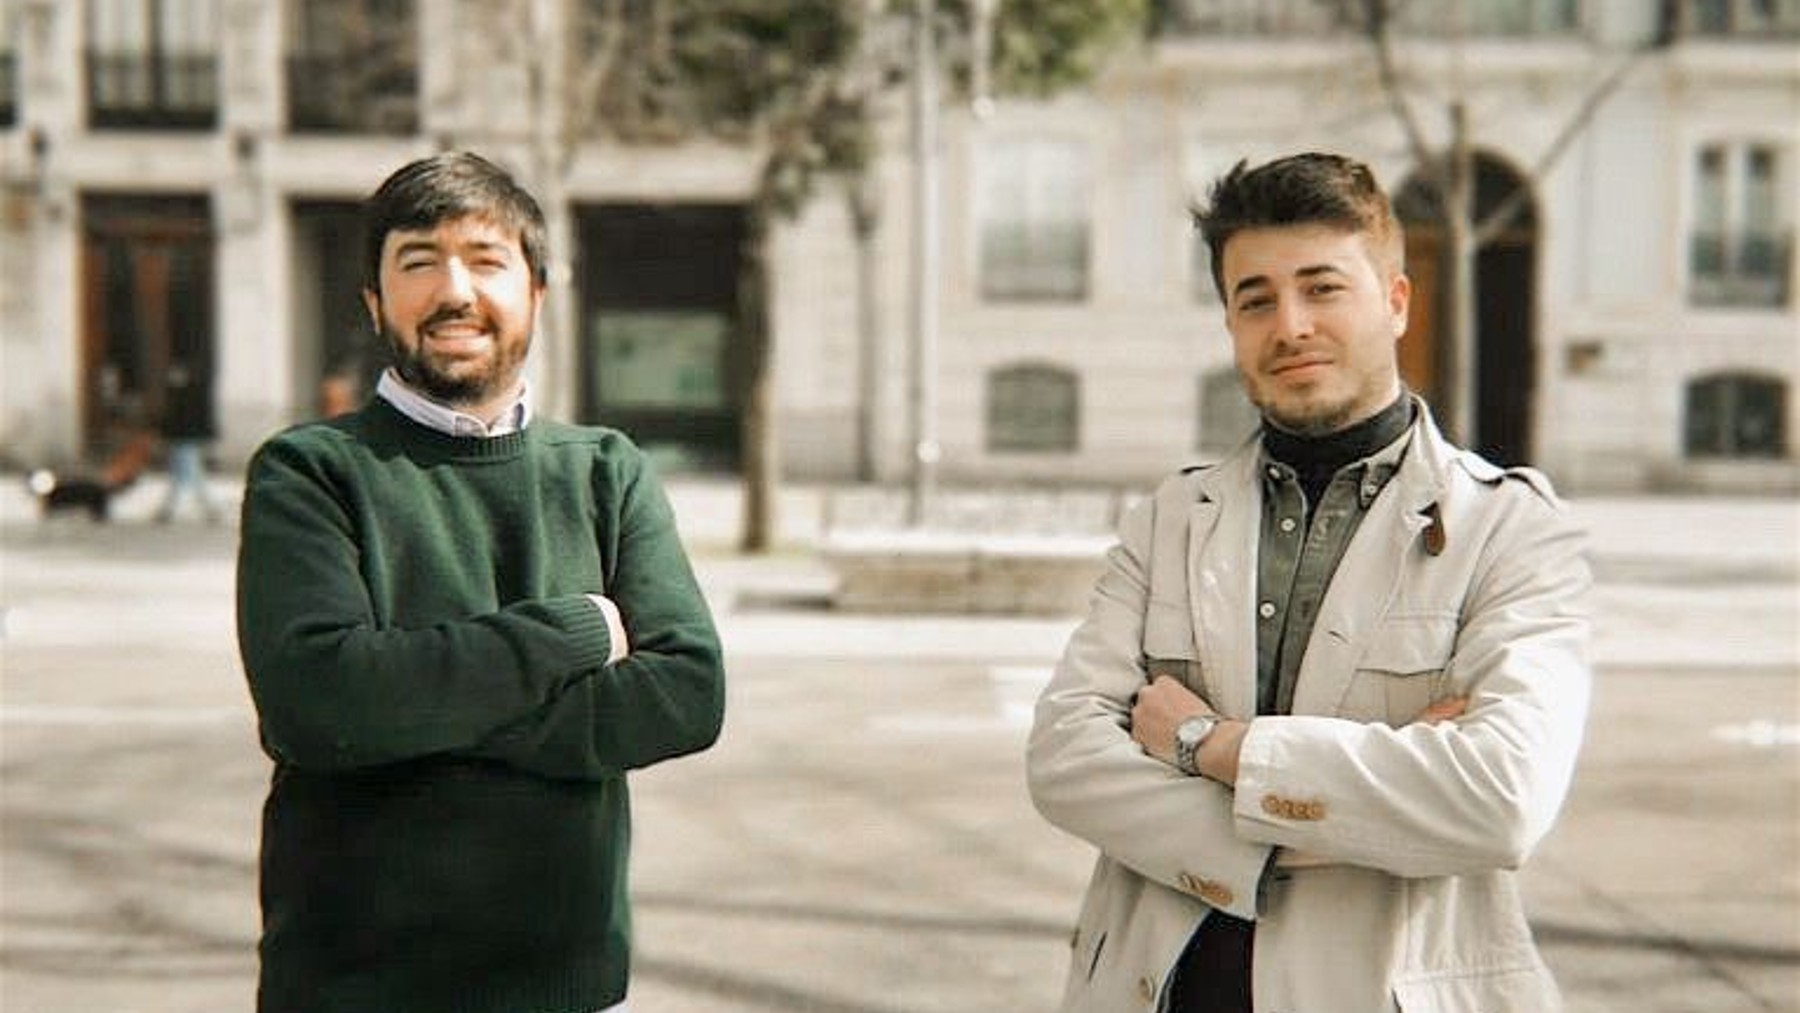 Luis Enrique Martínez y Alberto Hortigüela, fundadores de JoinHome